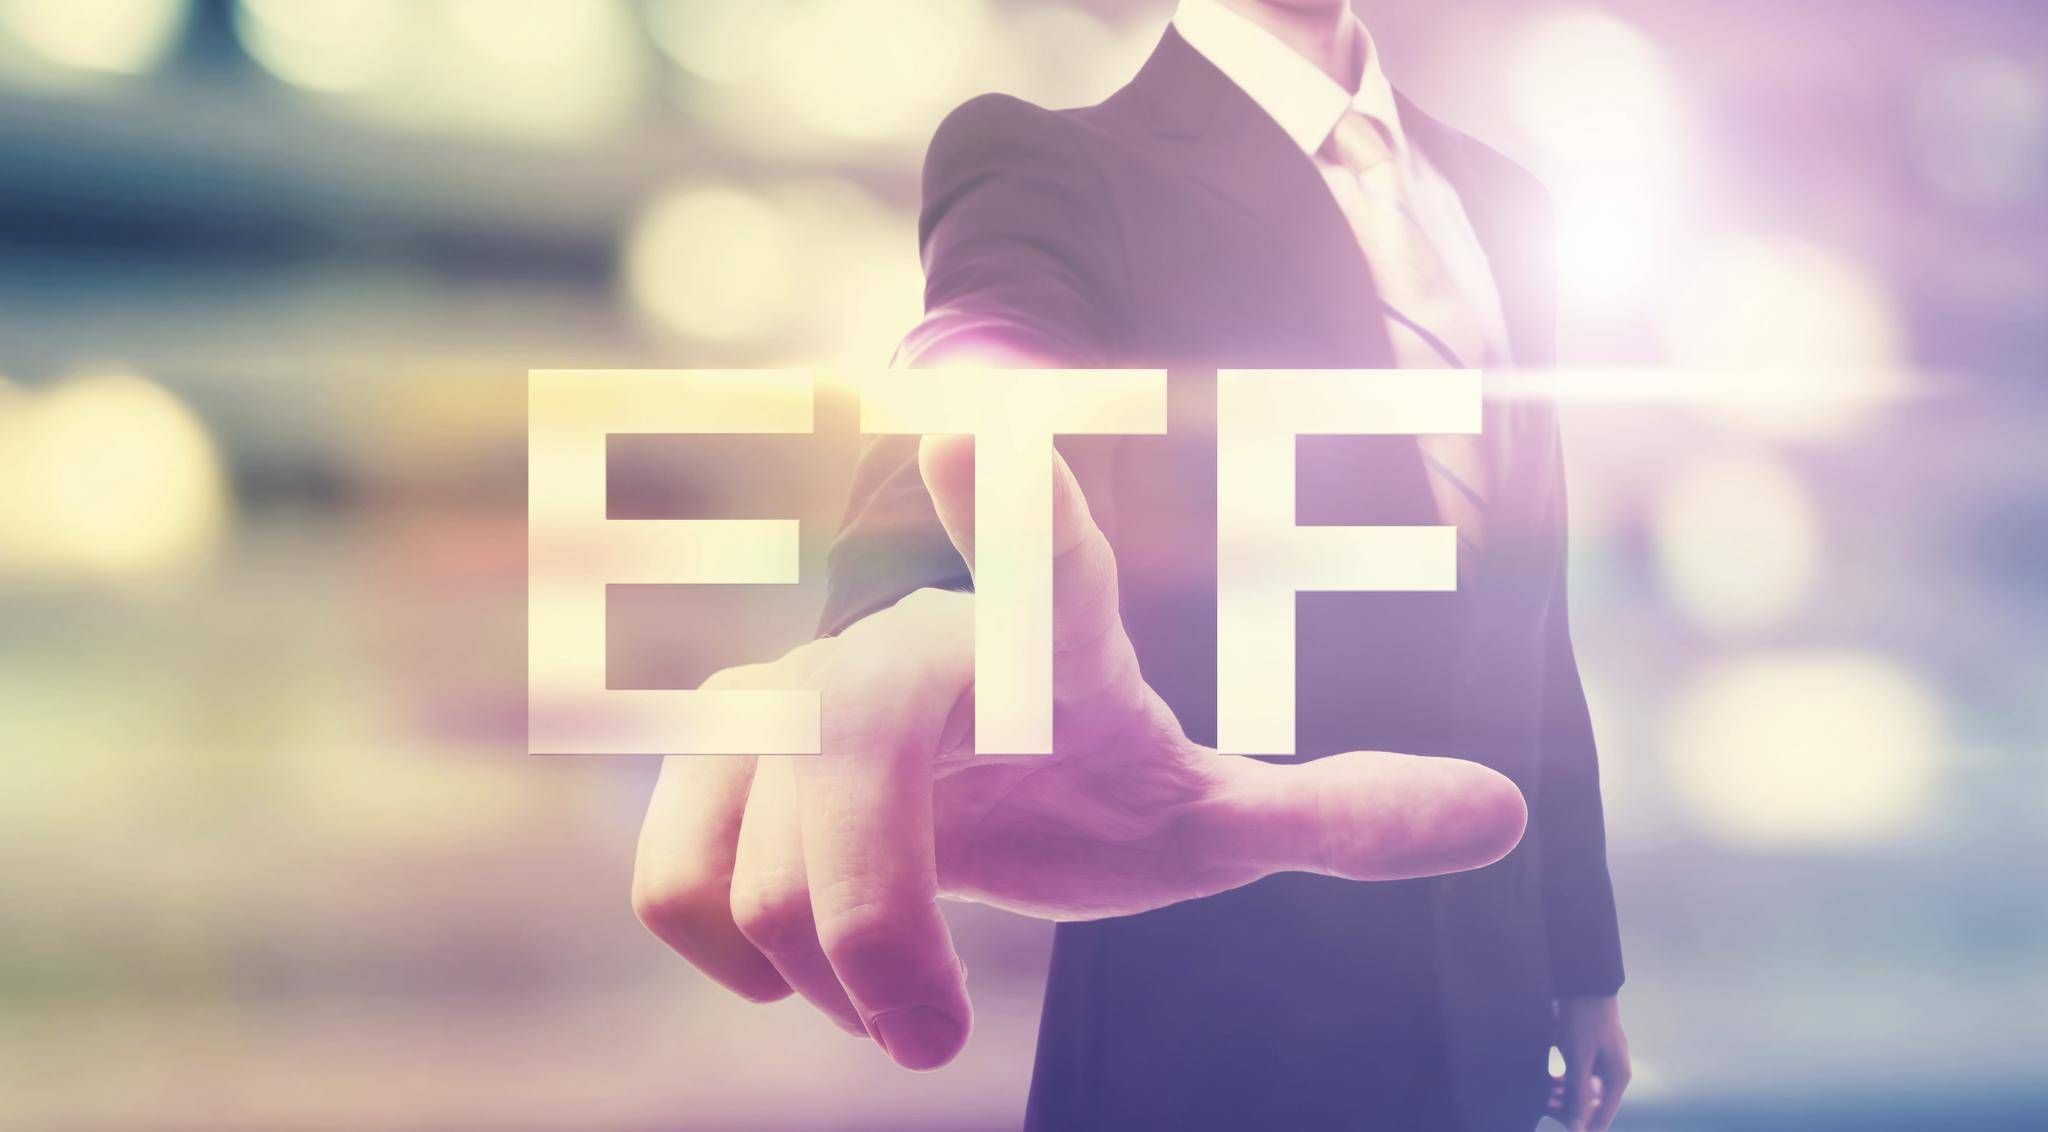 ETF:er, varför investera och vad är det? I videon kan vi höra hur Günther berättar om ett nytt sätt att placera på, nämligen börshandlade fonder